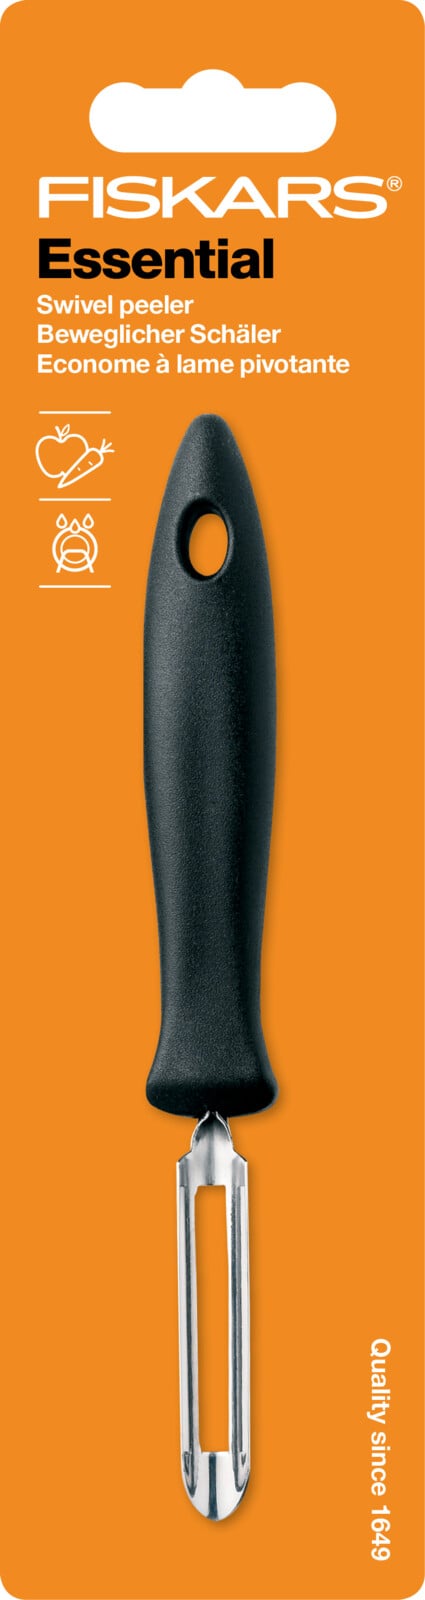 Нож для чистки овощей с подвижным лезвием Fiskars Essential, 6 см (1023787) - фото 2